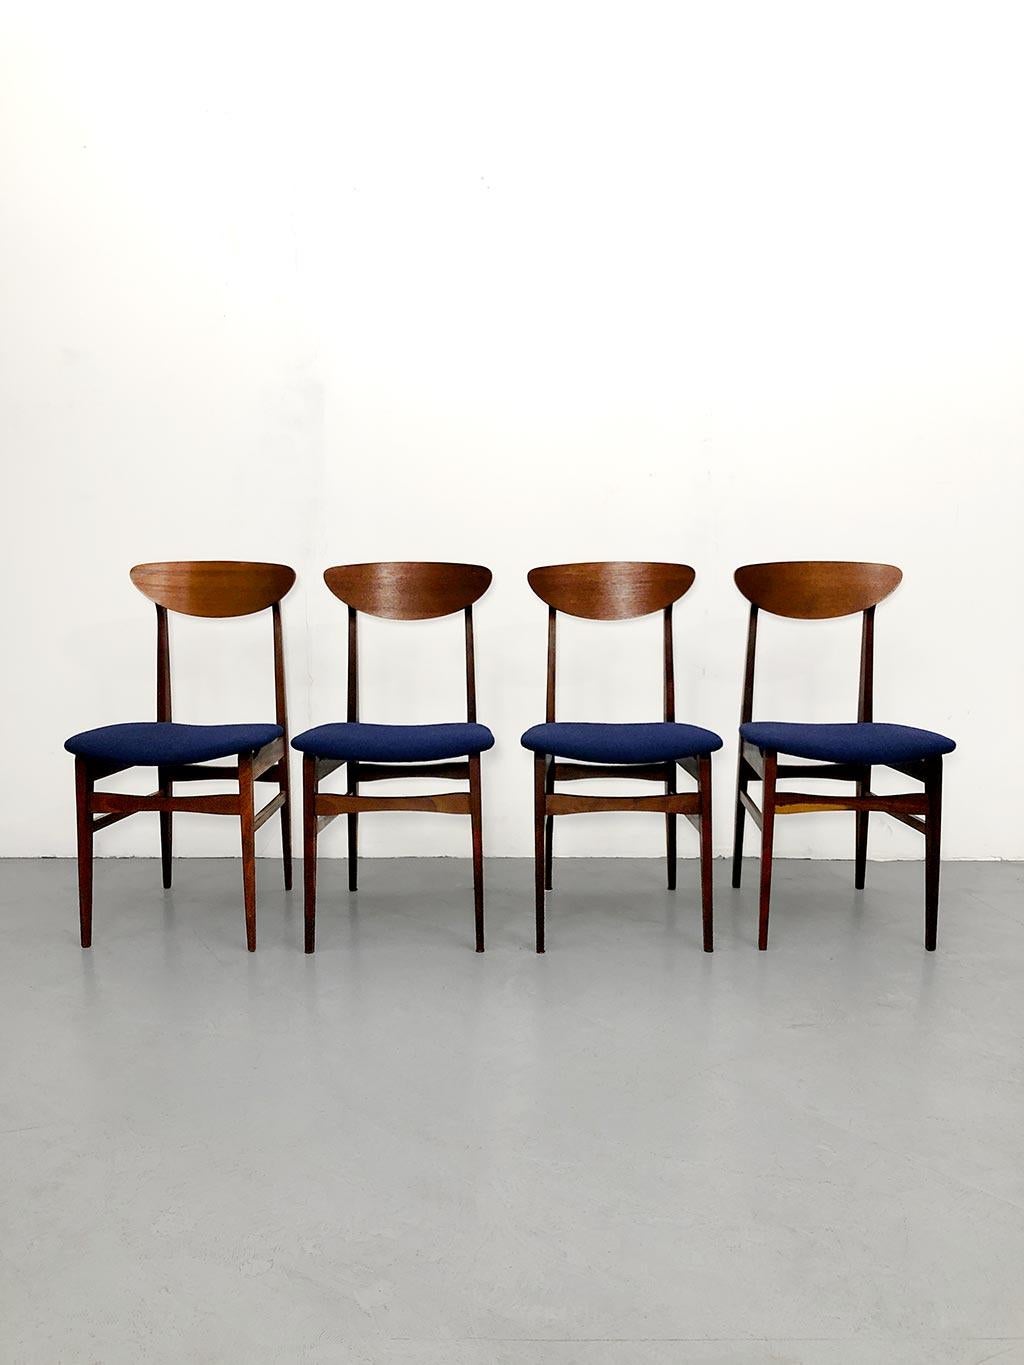 Satz bestehend aus 4 Esszimmerstühlen, hergestellt von Farstrup, Dänemark, in den 1960er Jahren. Gestell aus Buche und Rückenlehne aus Teakholz. Der Sitz wurde von einem professionellen Polsterer restauriert und mit Bouclè aus gesellschaftsblauer